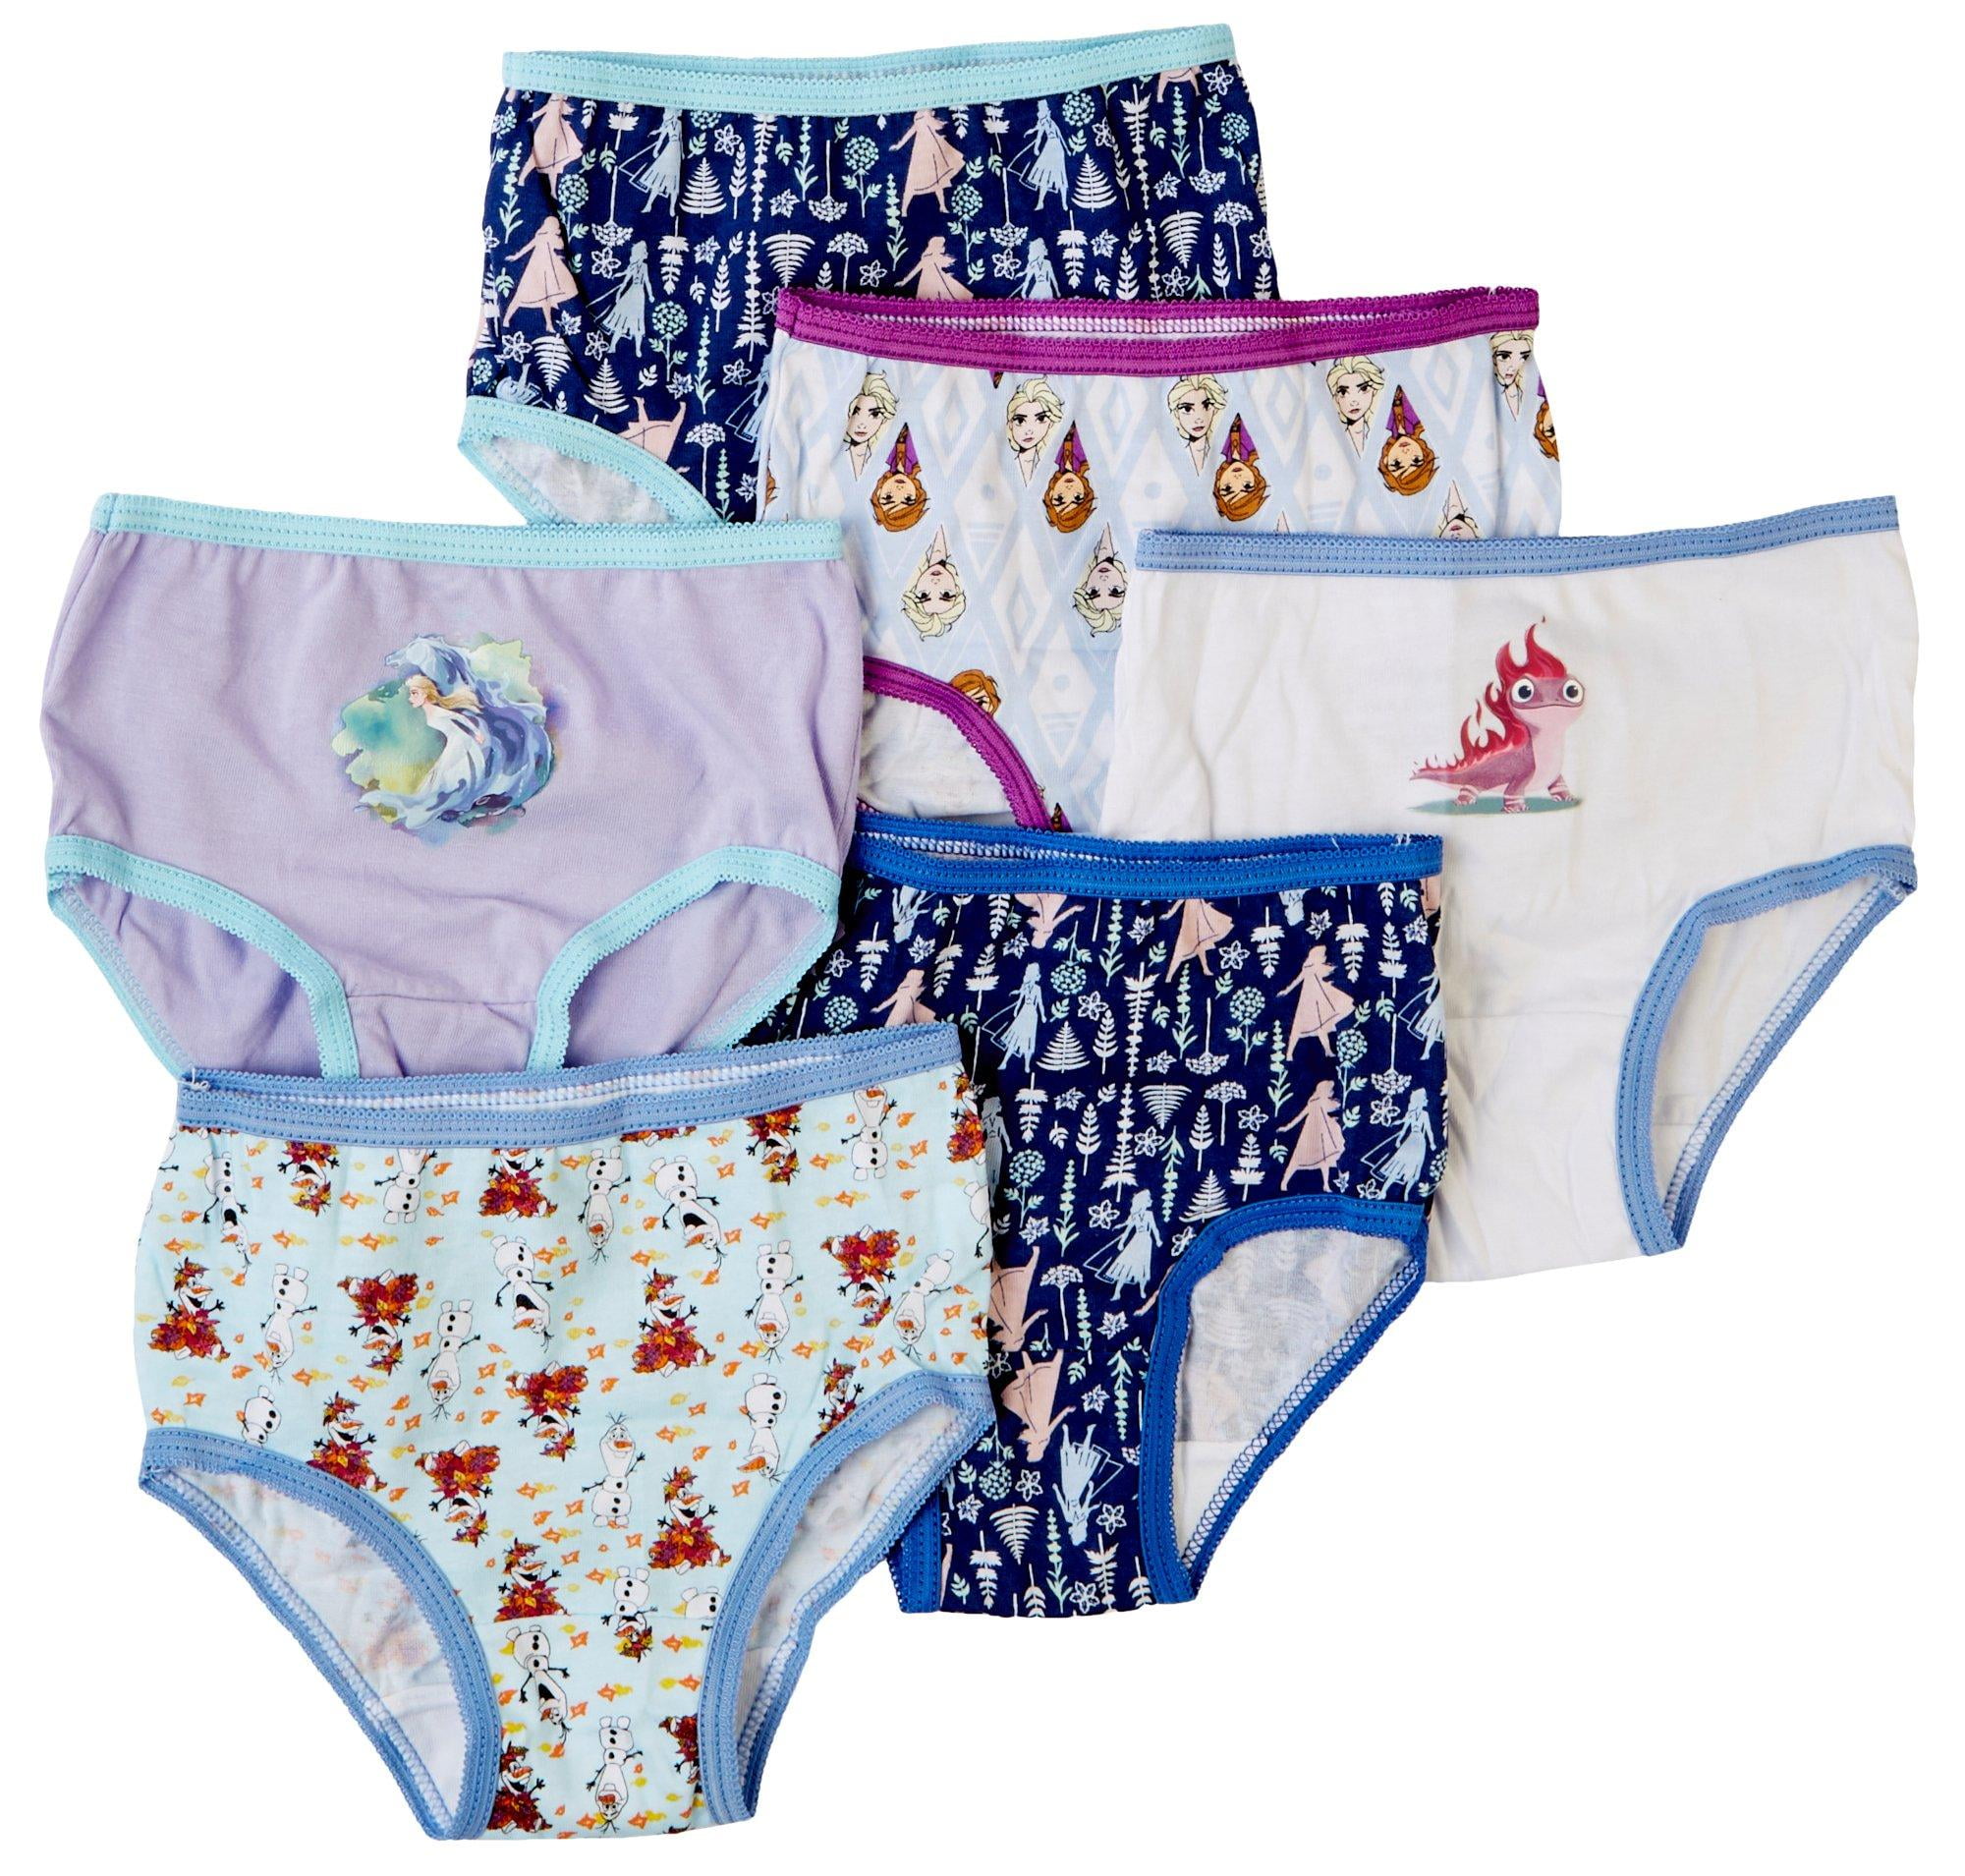 Disney Minnie Mouse Cotton 7 Undies Panties Underwear Toddler Girls 2t/3t  for sale online